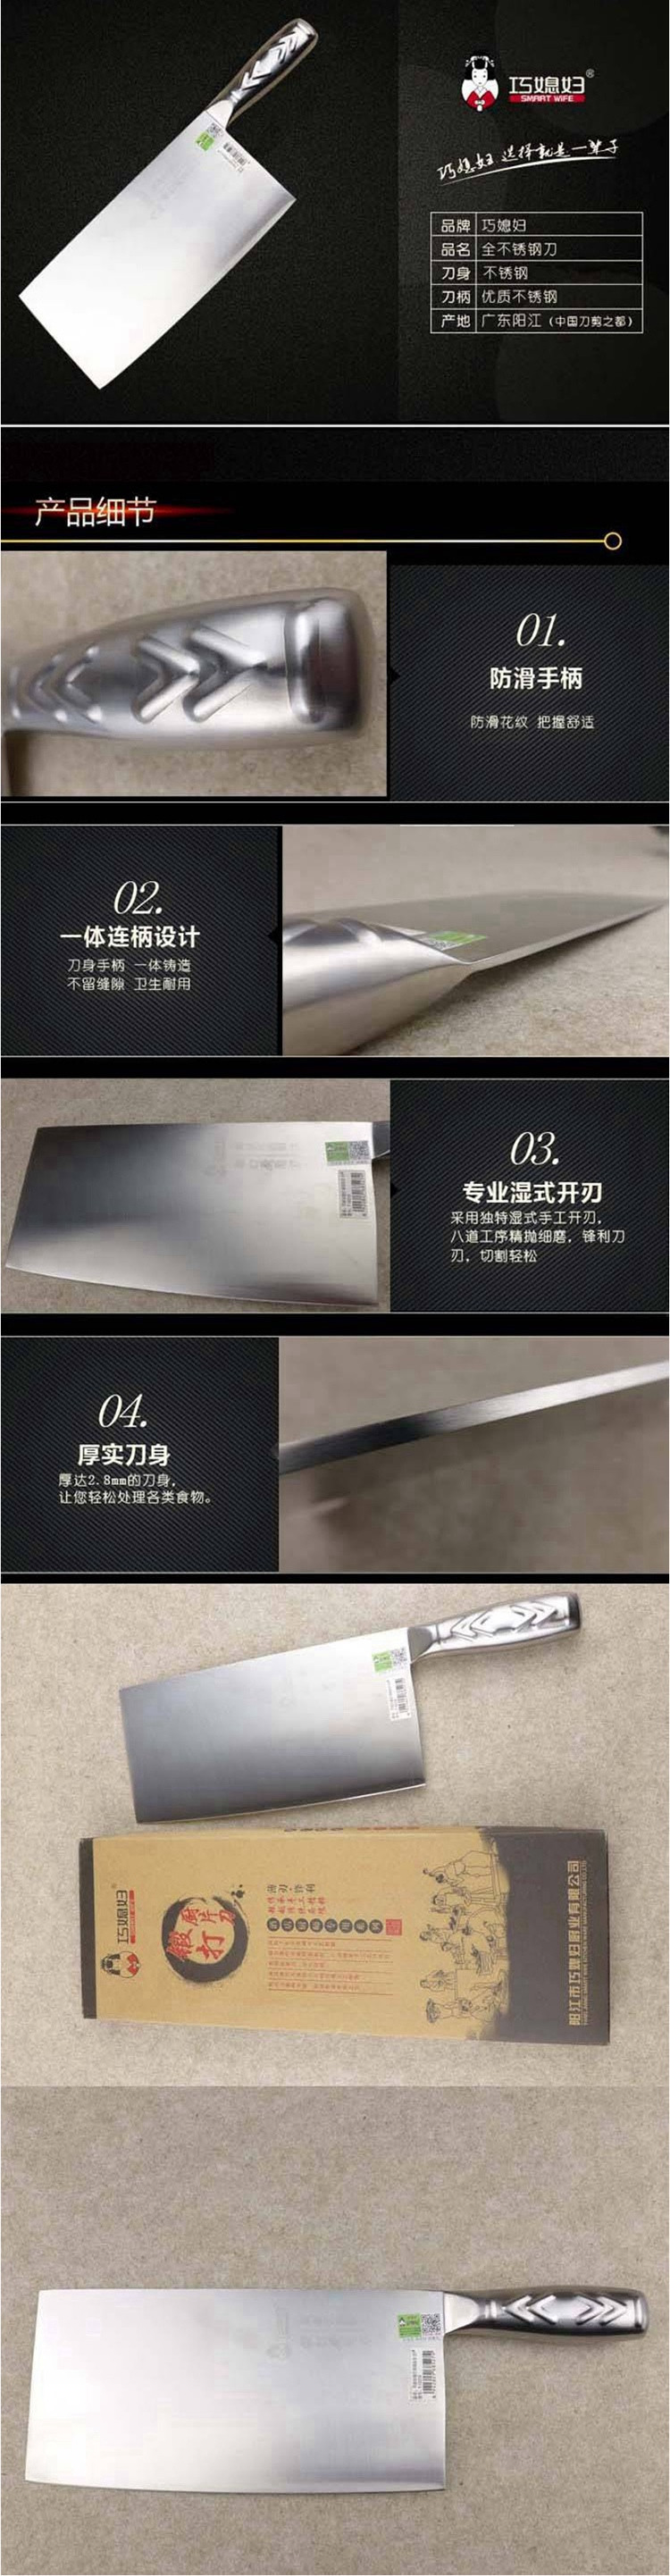 巧媳妇 锻打钢柄厨片刀T-112酒店厨师专用系列薄刃锋利